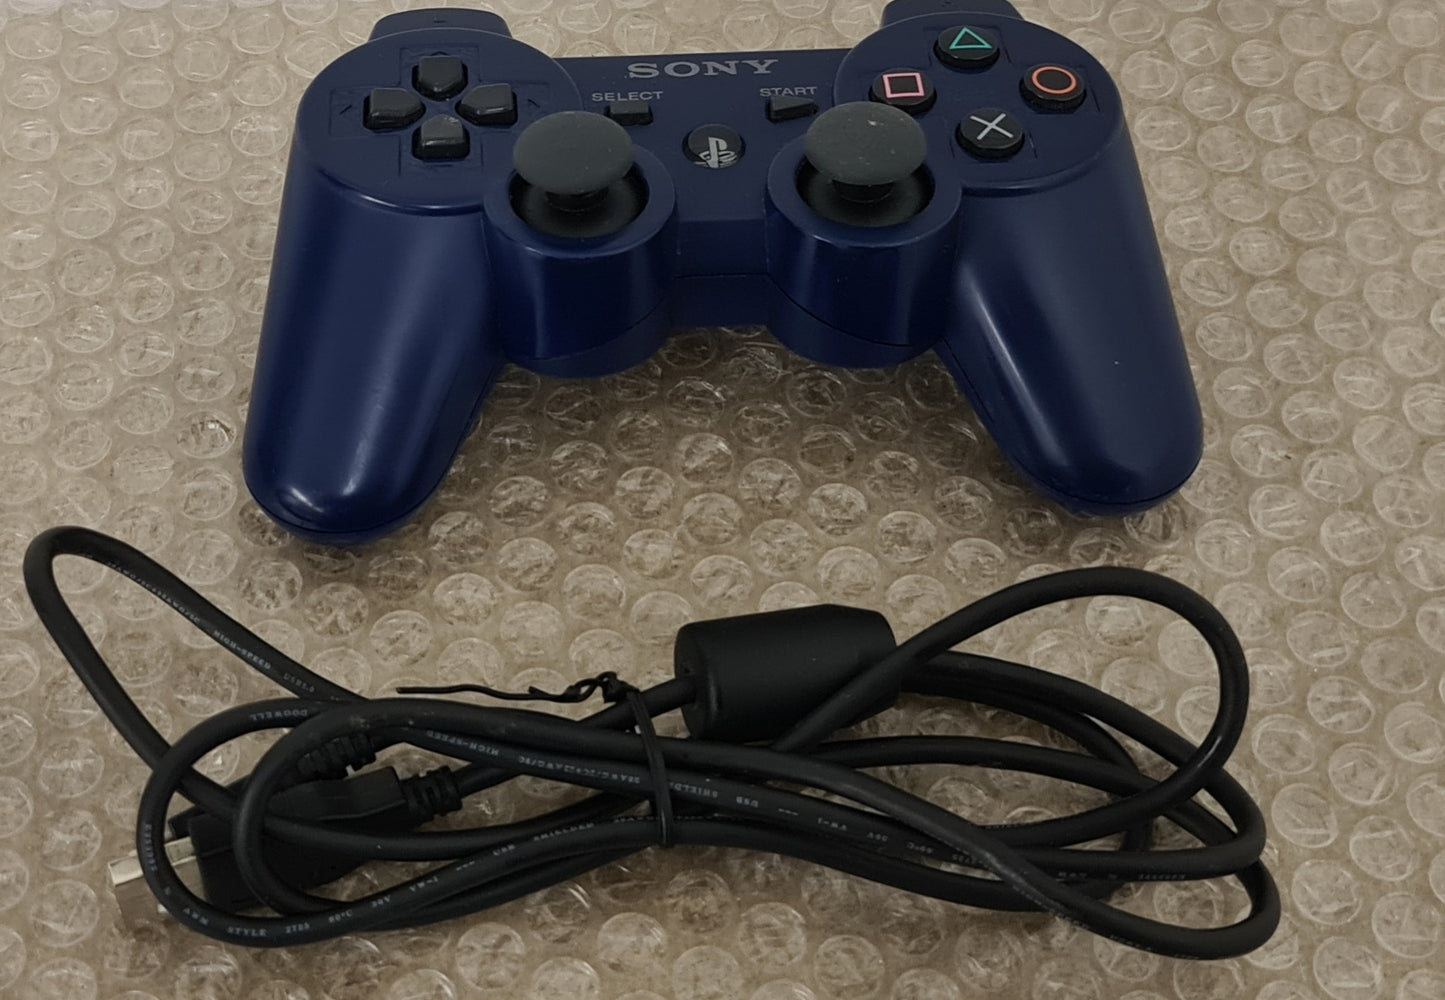 Official Genuine Original Sony Dual Shock 3 PS3 Controller Blue